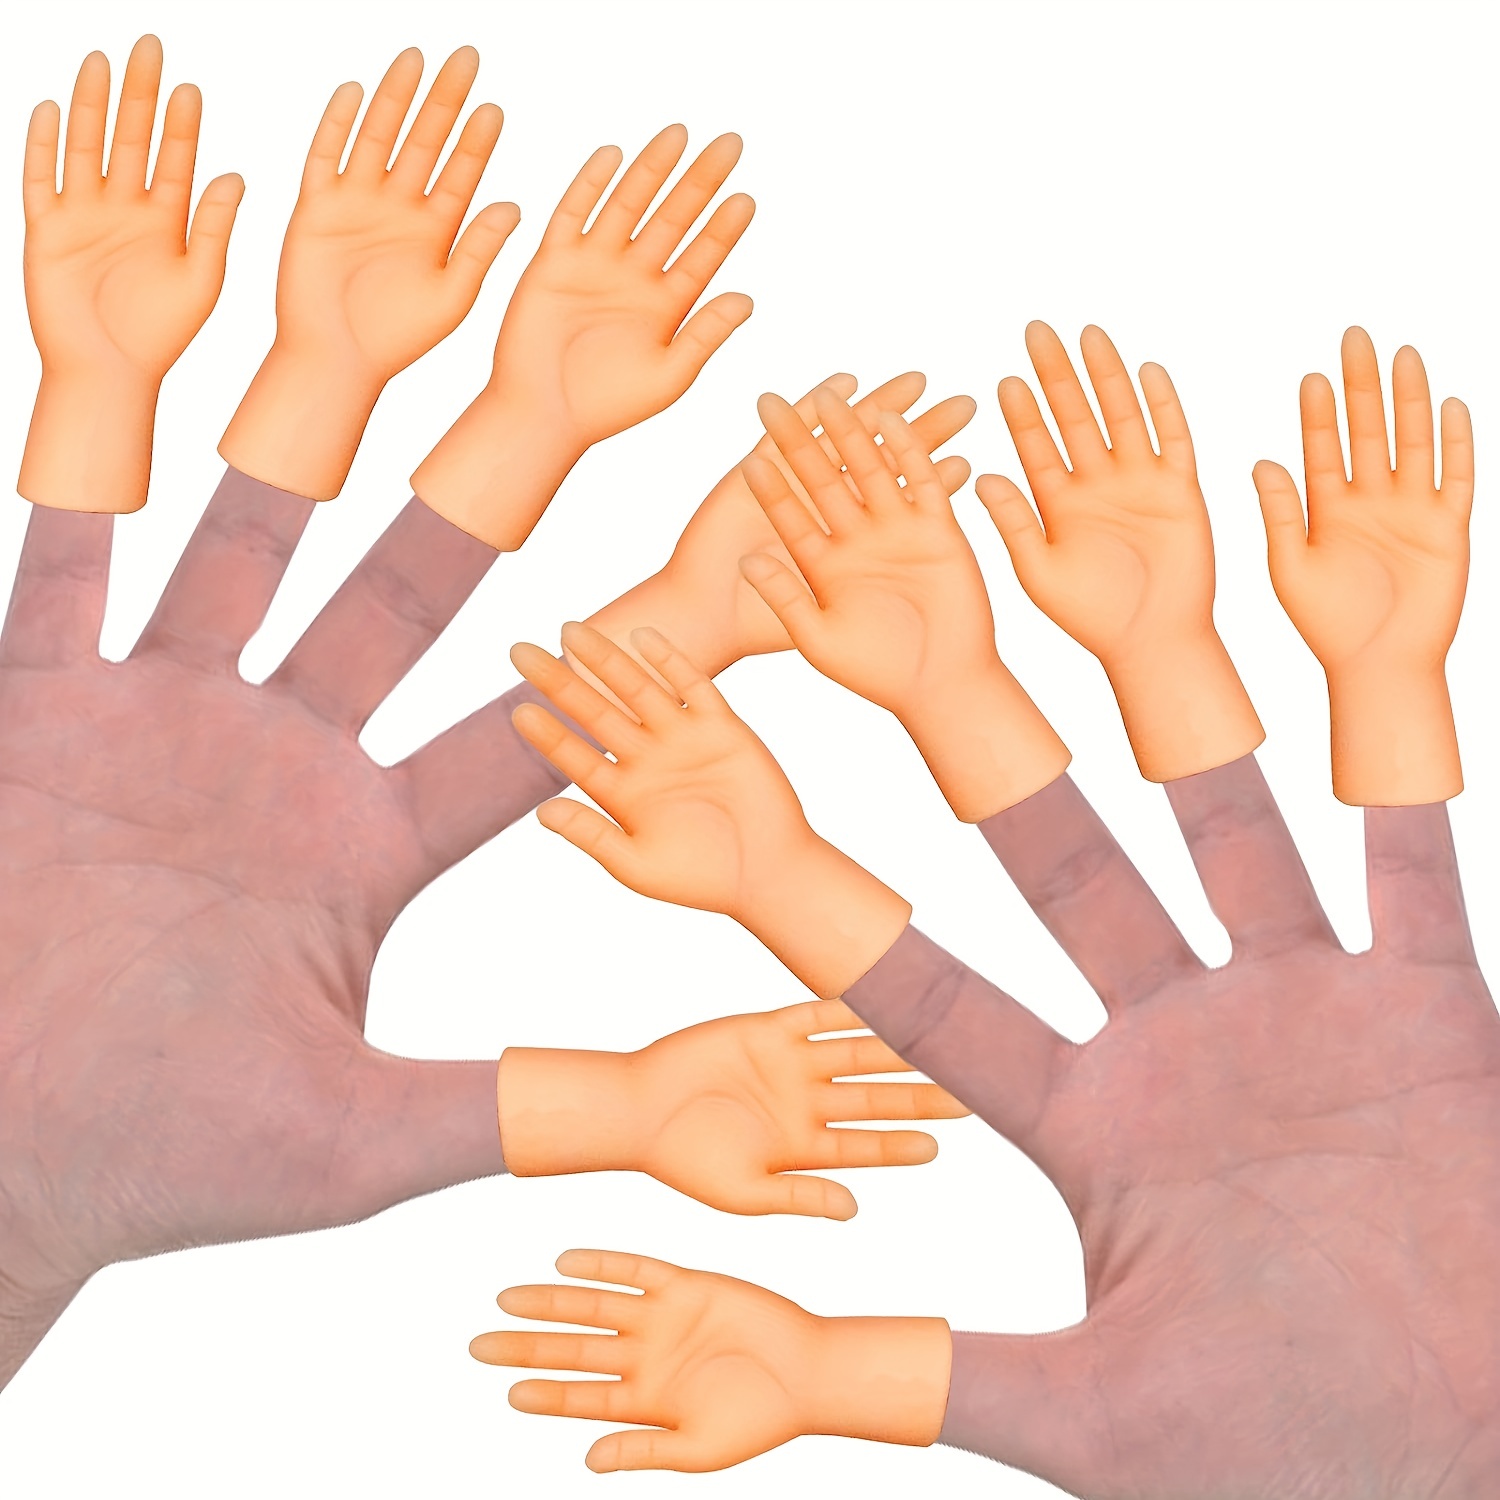 Tiny Hands - mini mains pour le bout des doigts